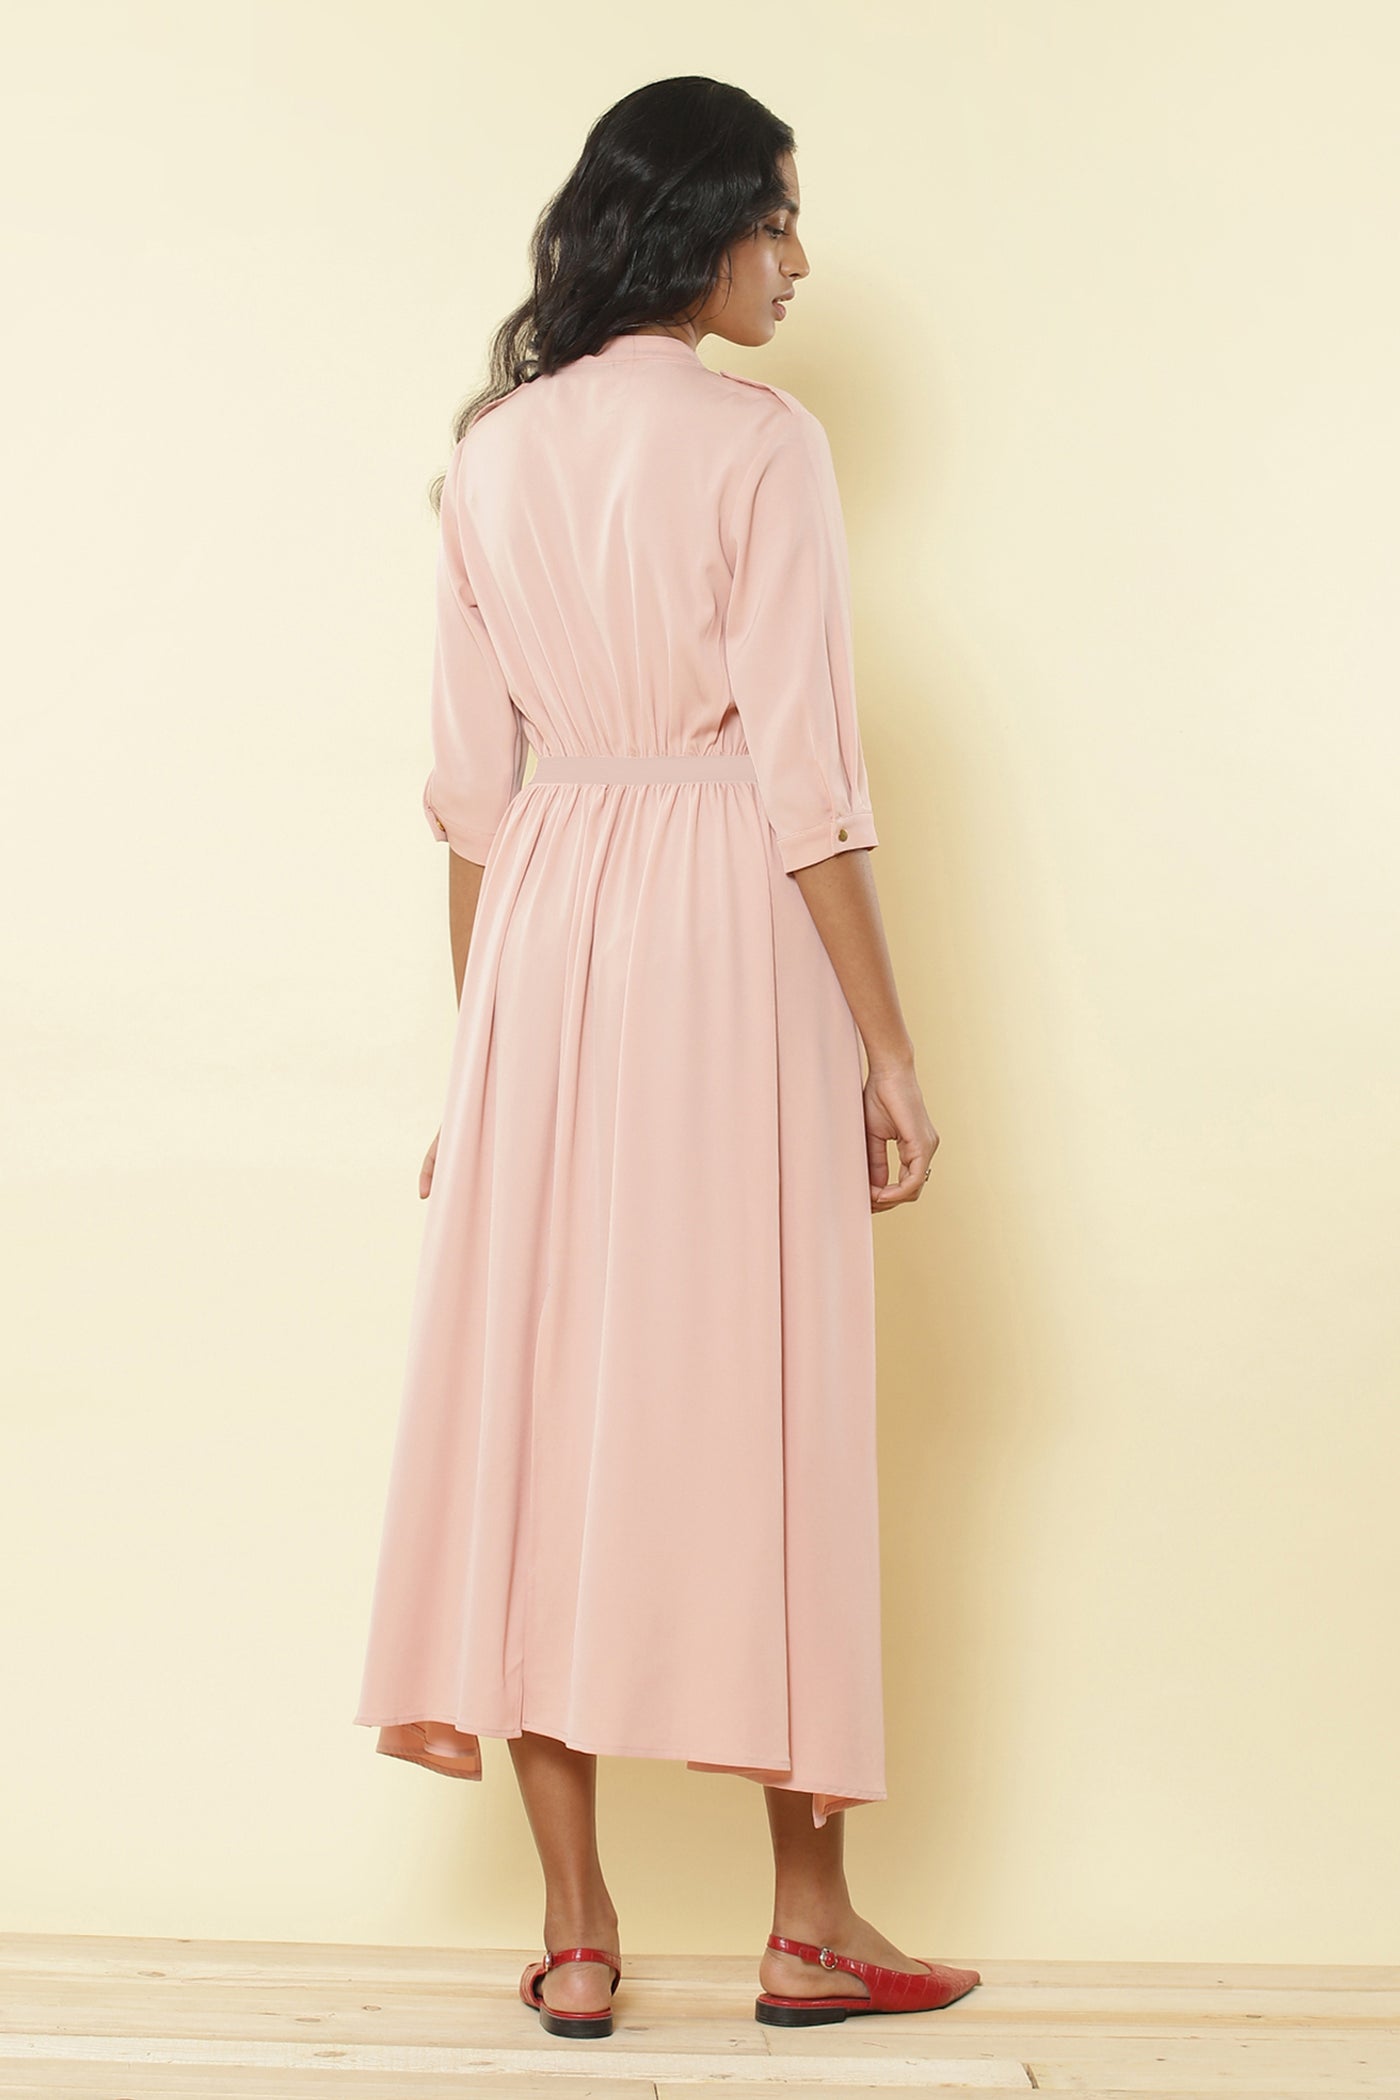 Ritu Kumar - Pink Mandarin Collar Long Dress - Melange Singapore - Indian Designer Wear Online Shopping